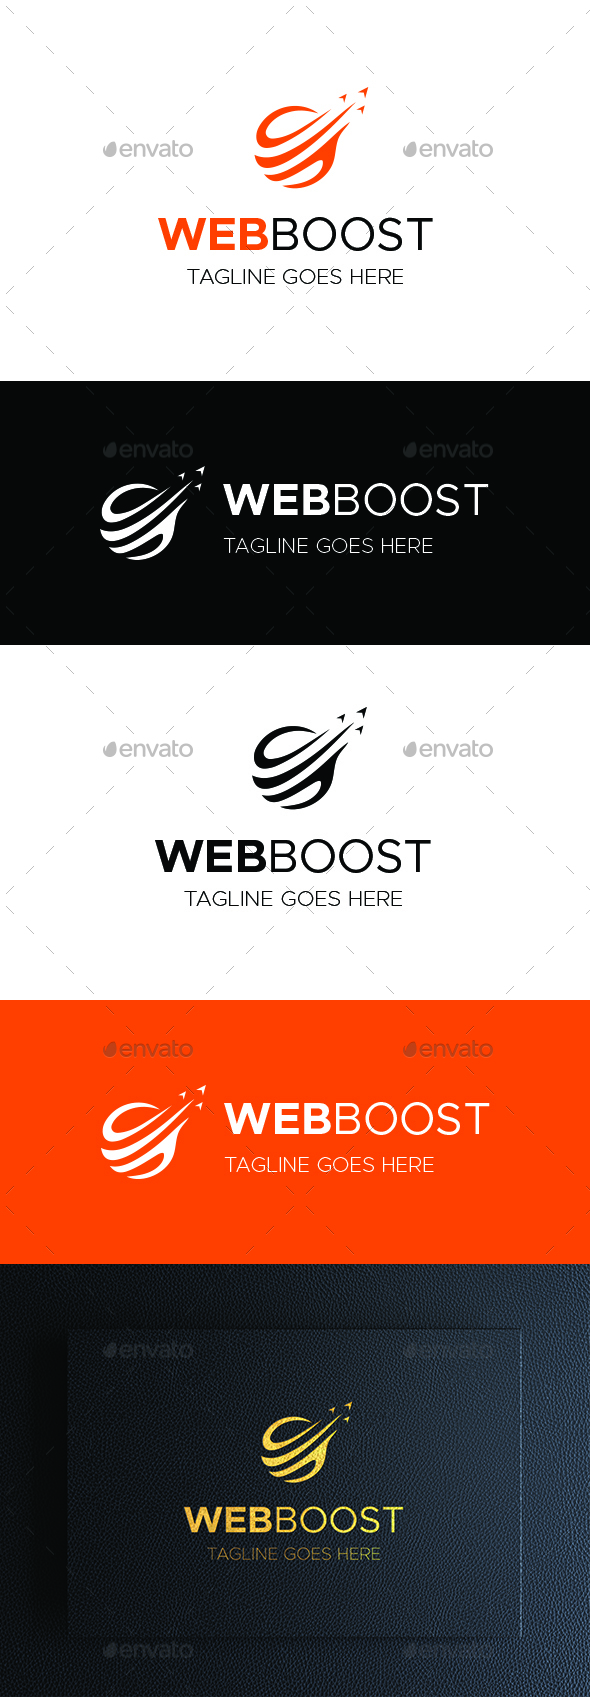 Web Logo - WEBBOOST